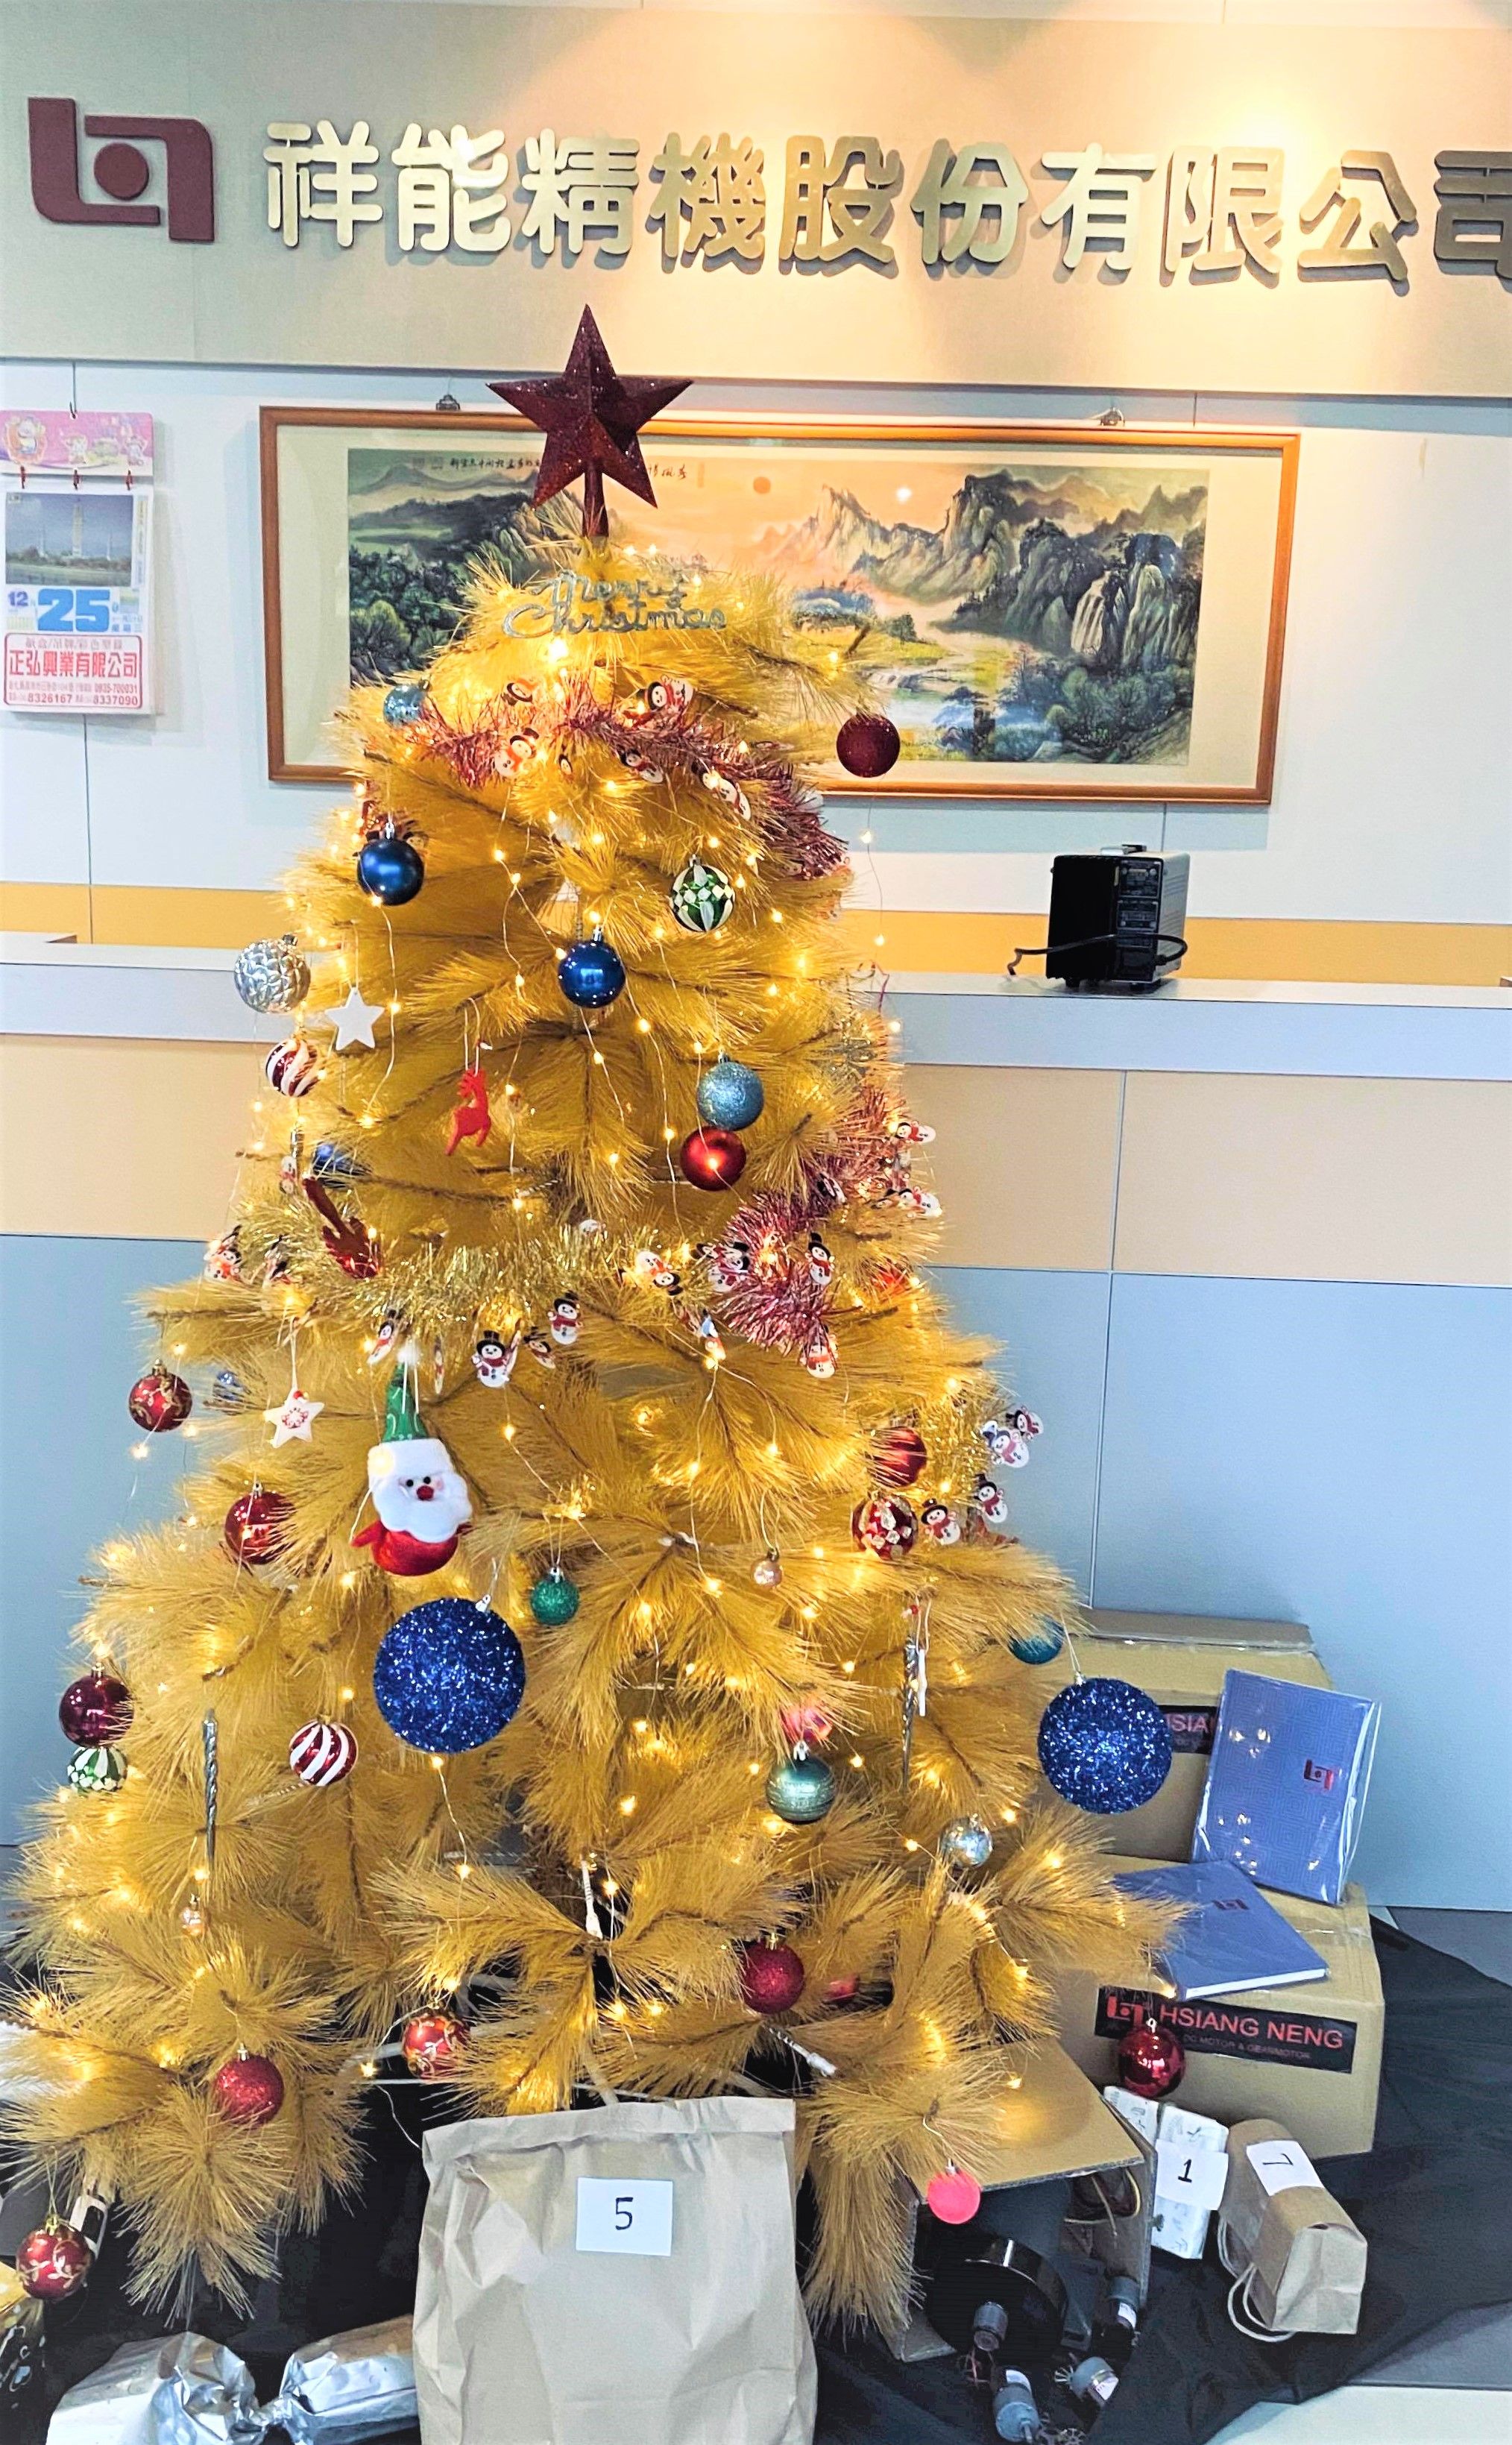 Hsiang Neng Tayvan İdari Binası'ndaki Noel ağacı